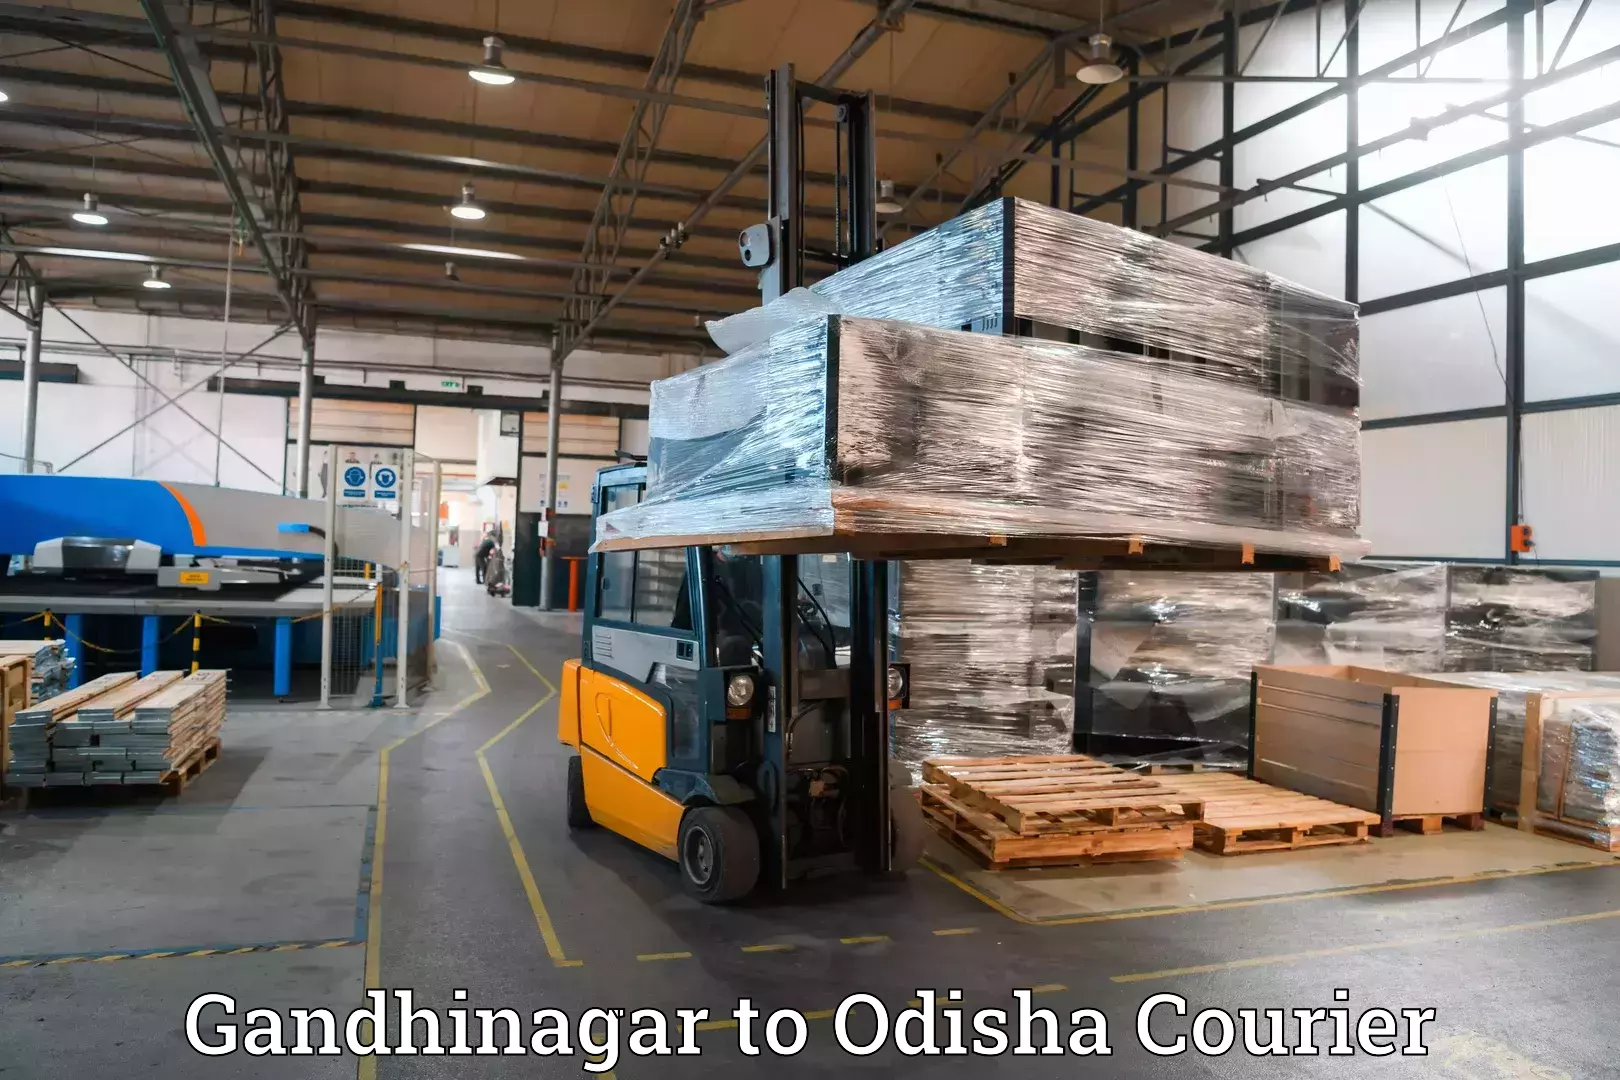 Baggage delivery solutions Gandhinagar to Barkote